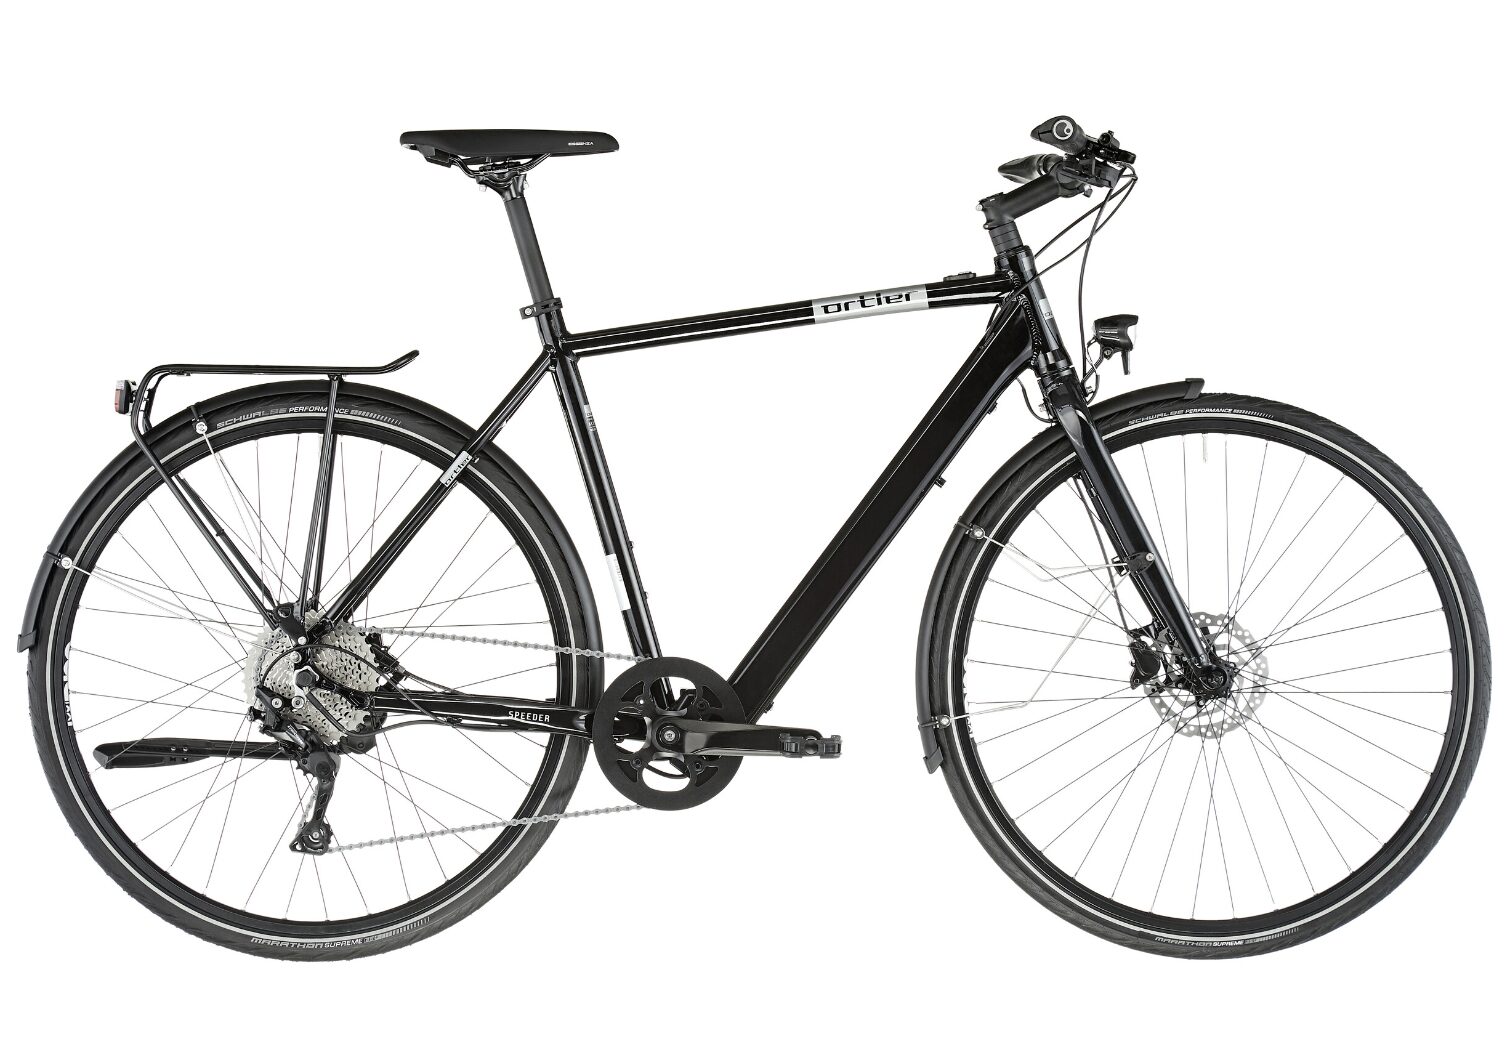 bikster.at bietet das E-Bike „Ortler Speeder schwarz" um 869 Euro an. © bikester.at